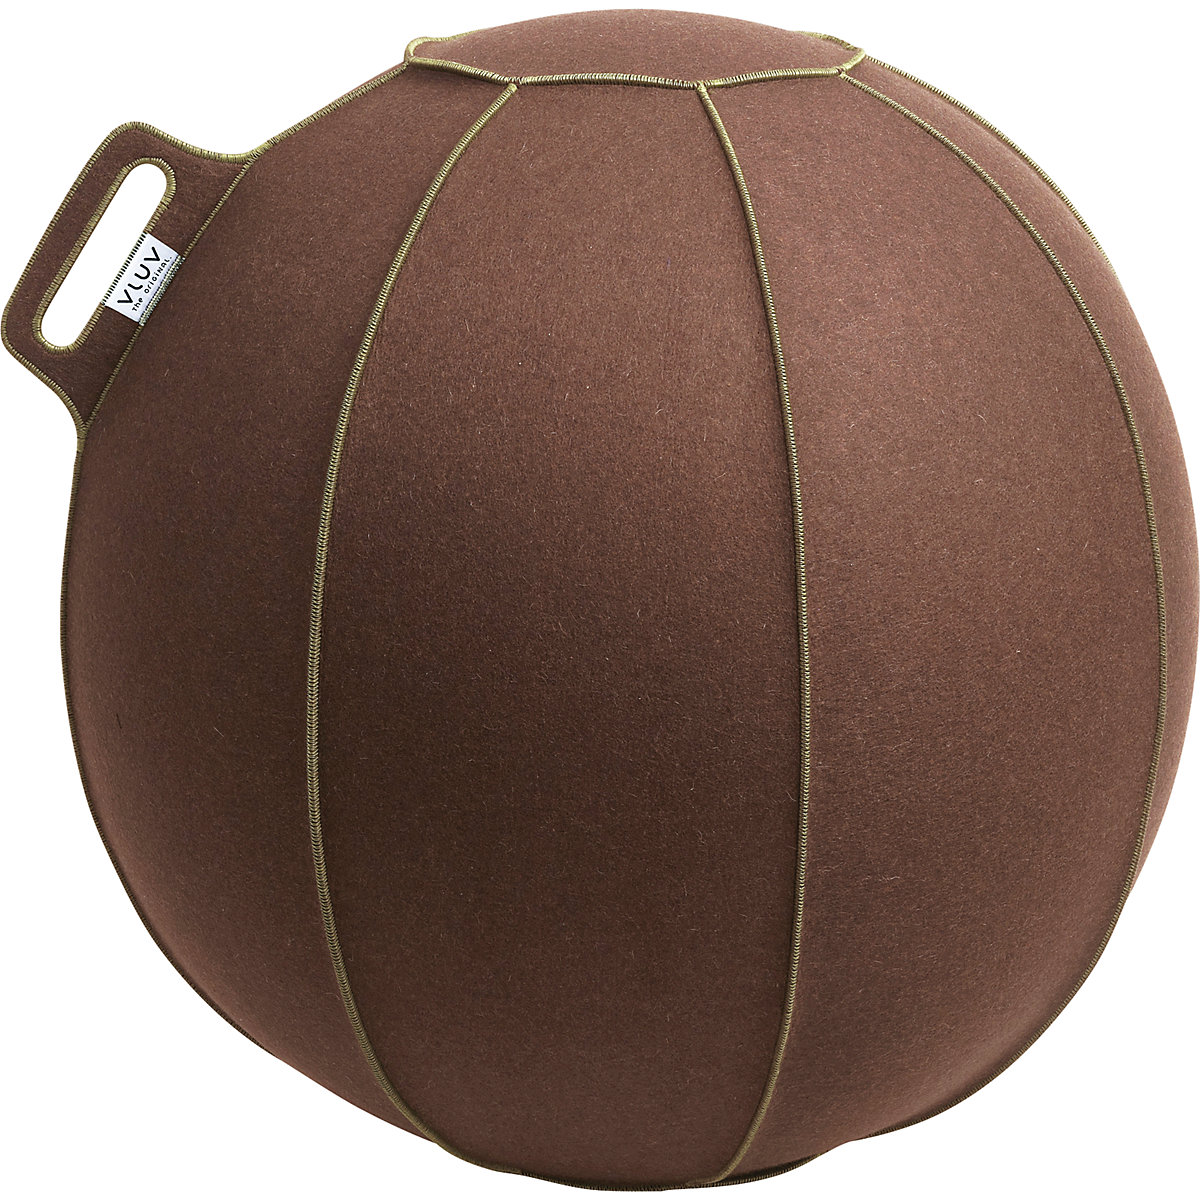 VELT Swiss ball – VLUV, made of merino wool felt, 600 – 650 mm, mottled brown/green